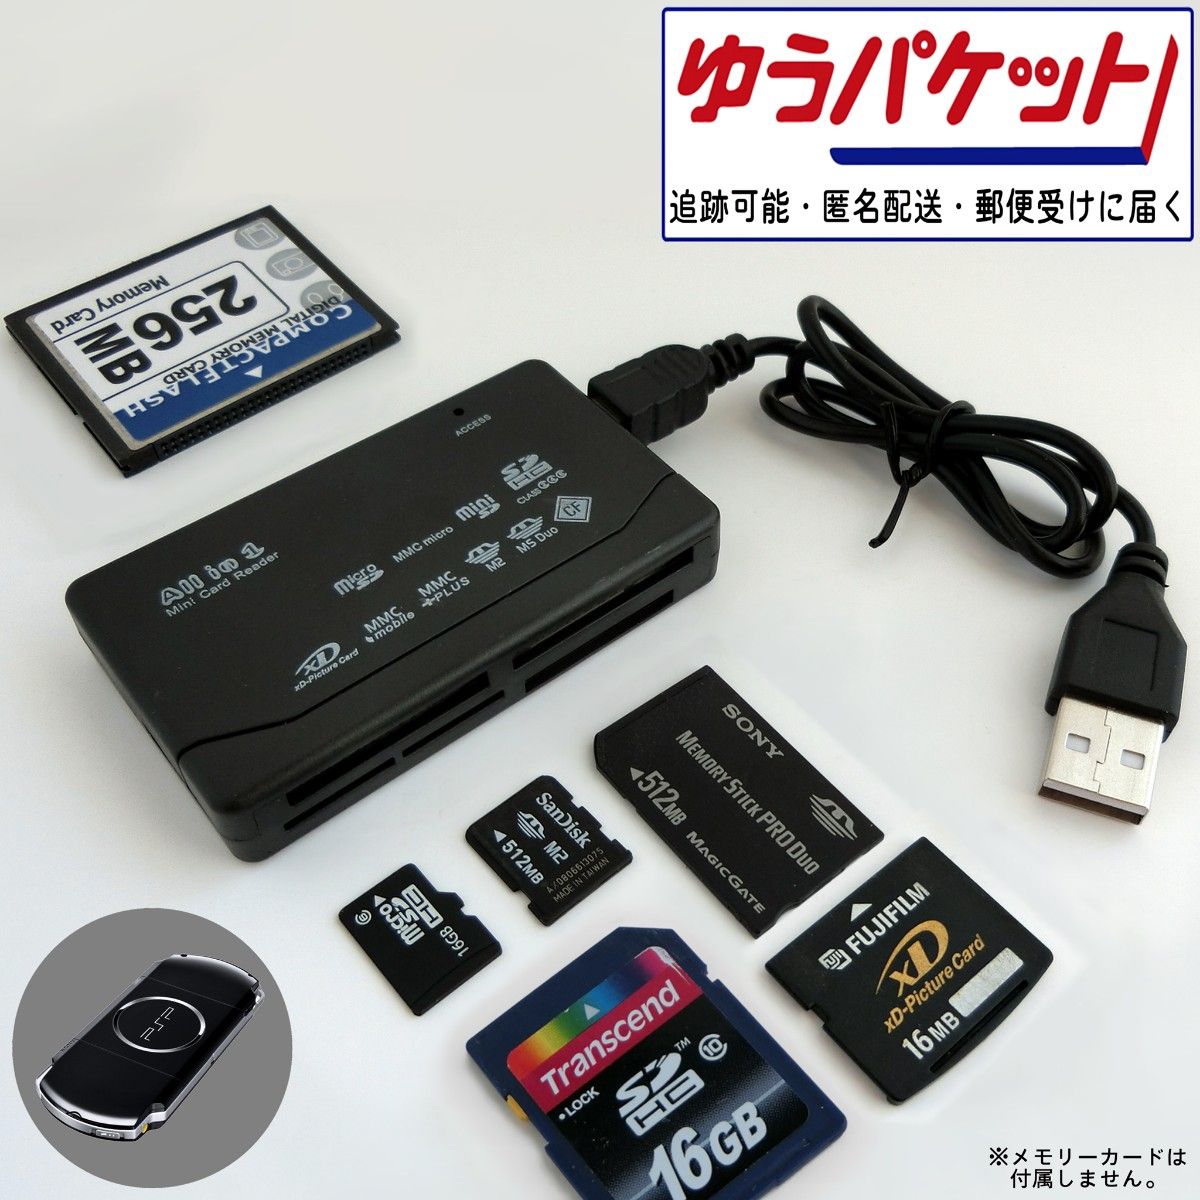 Anker 2-in-1 USB 3.0 ポータブルカードリーダーmicroSDXC   microSDHC   microSD   MMC